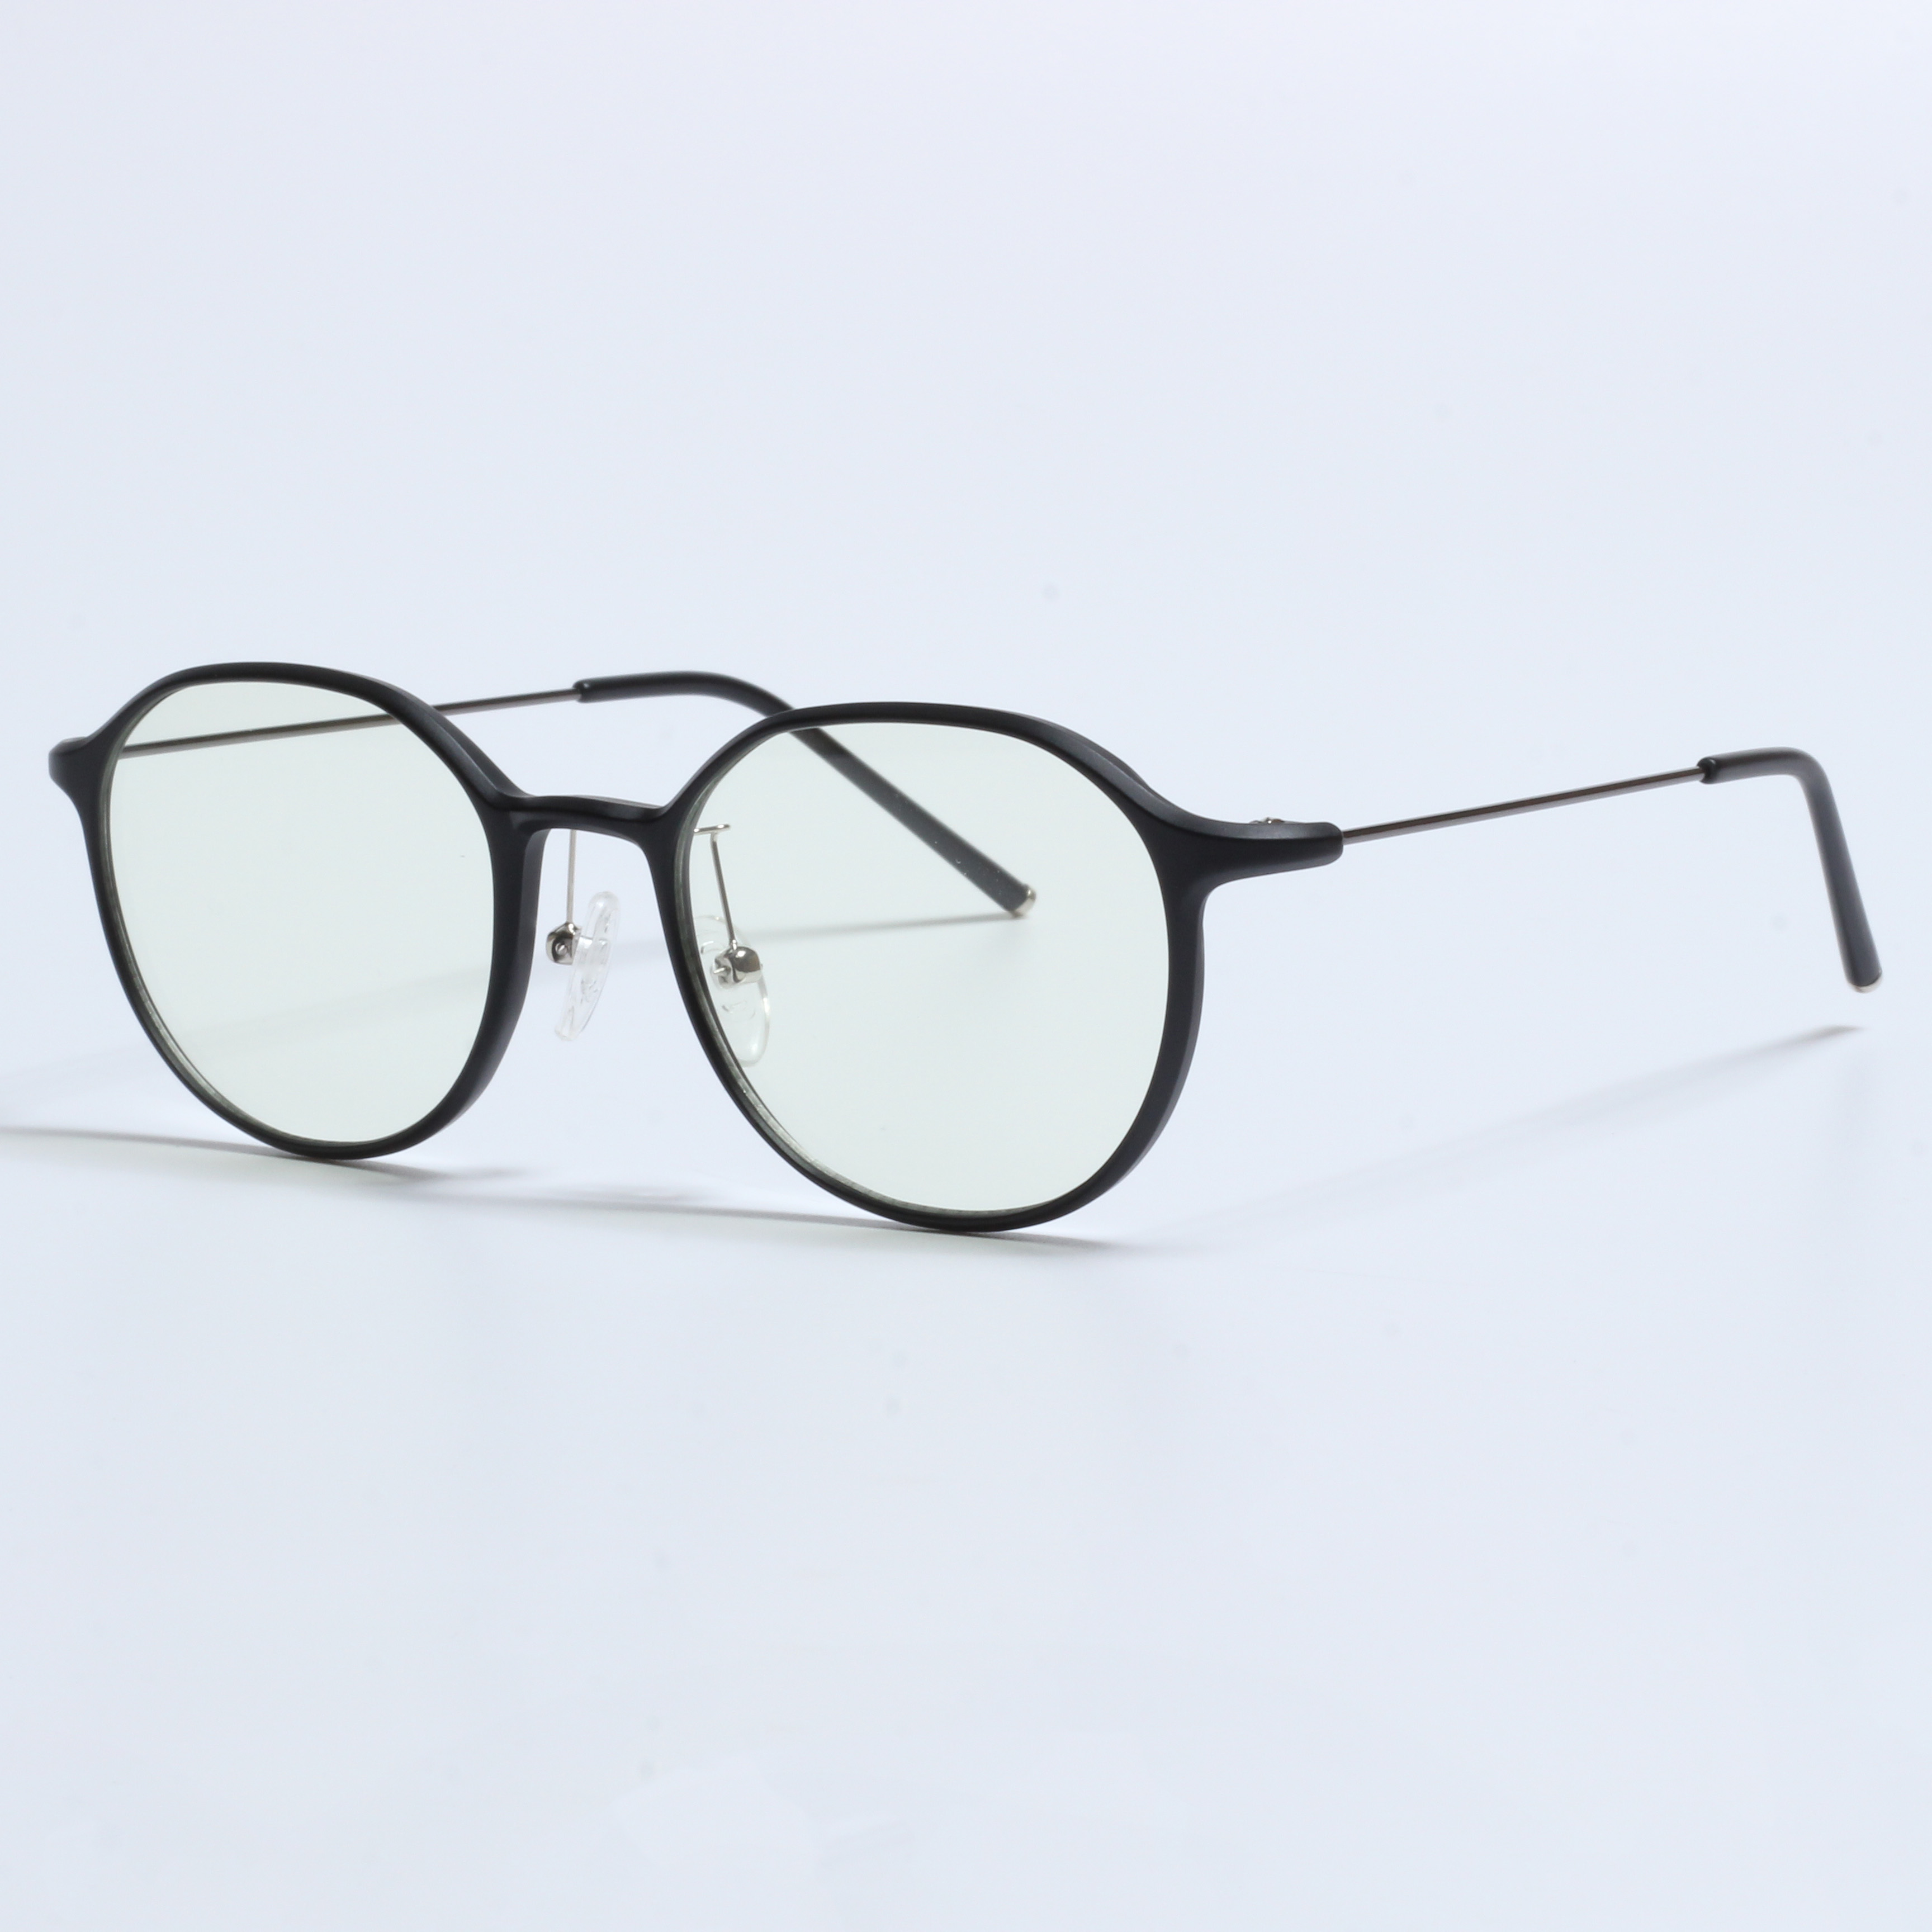 I-Vintage Thick Gafas Opticas De Hombres Transparent TR90 Frames (4)